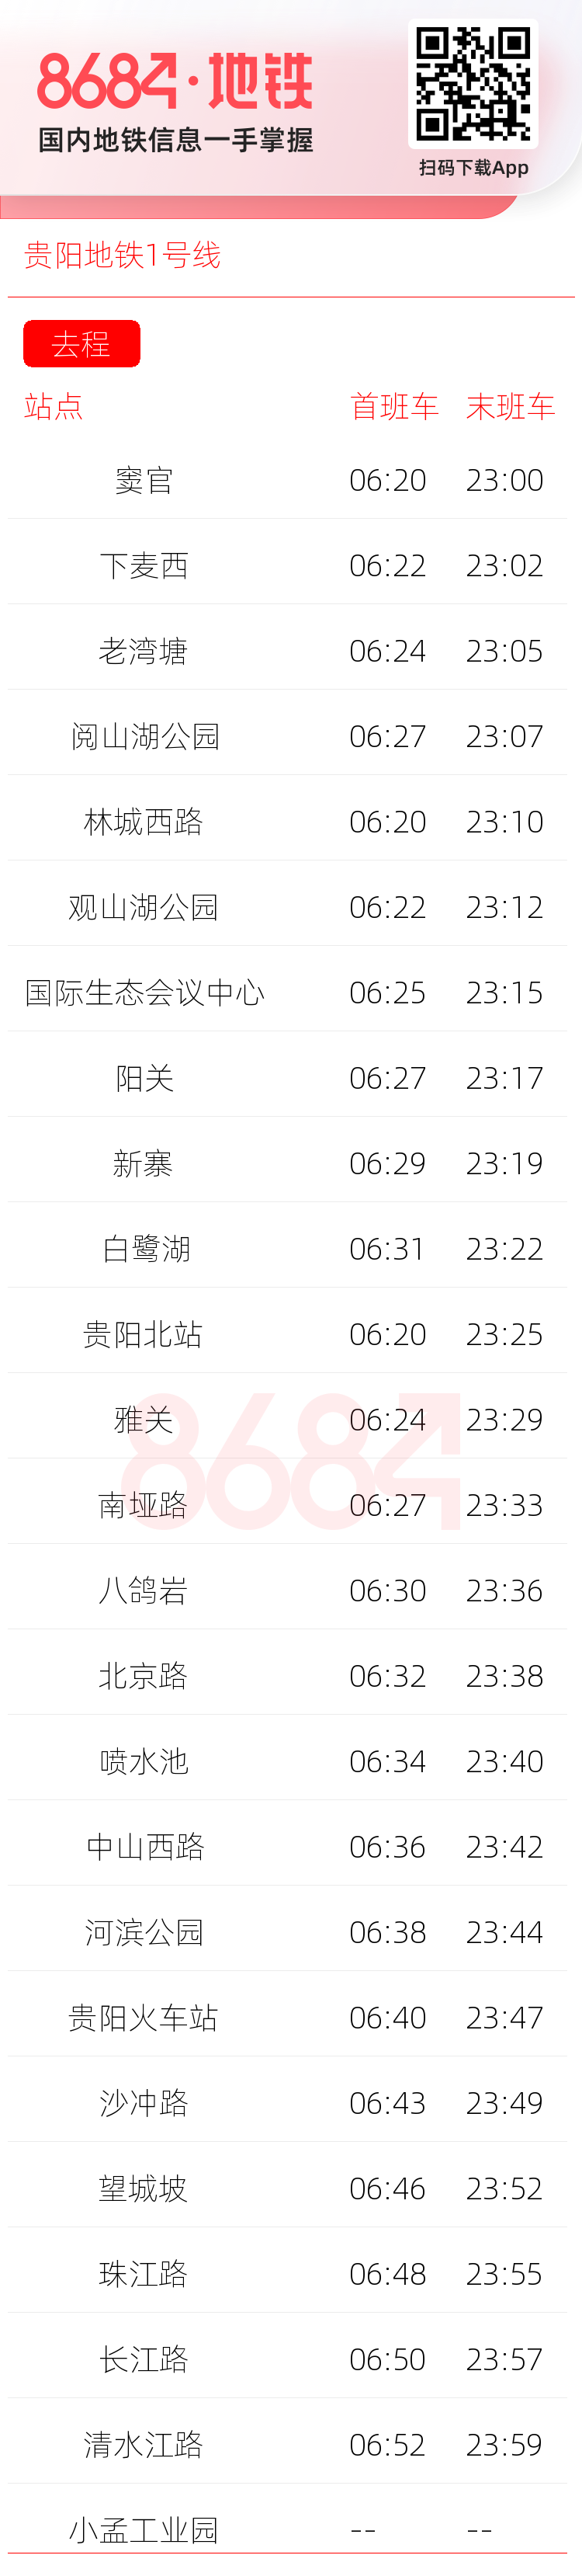 贵阳地铁1号线运营时间表